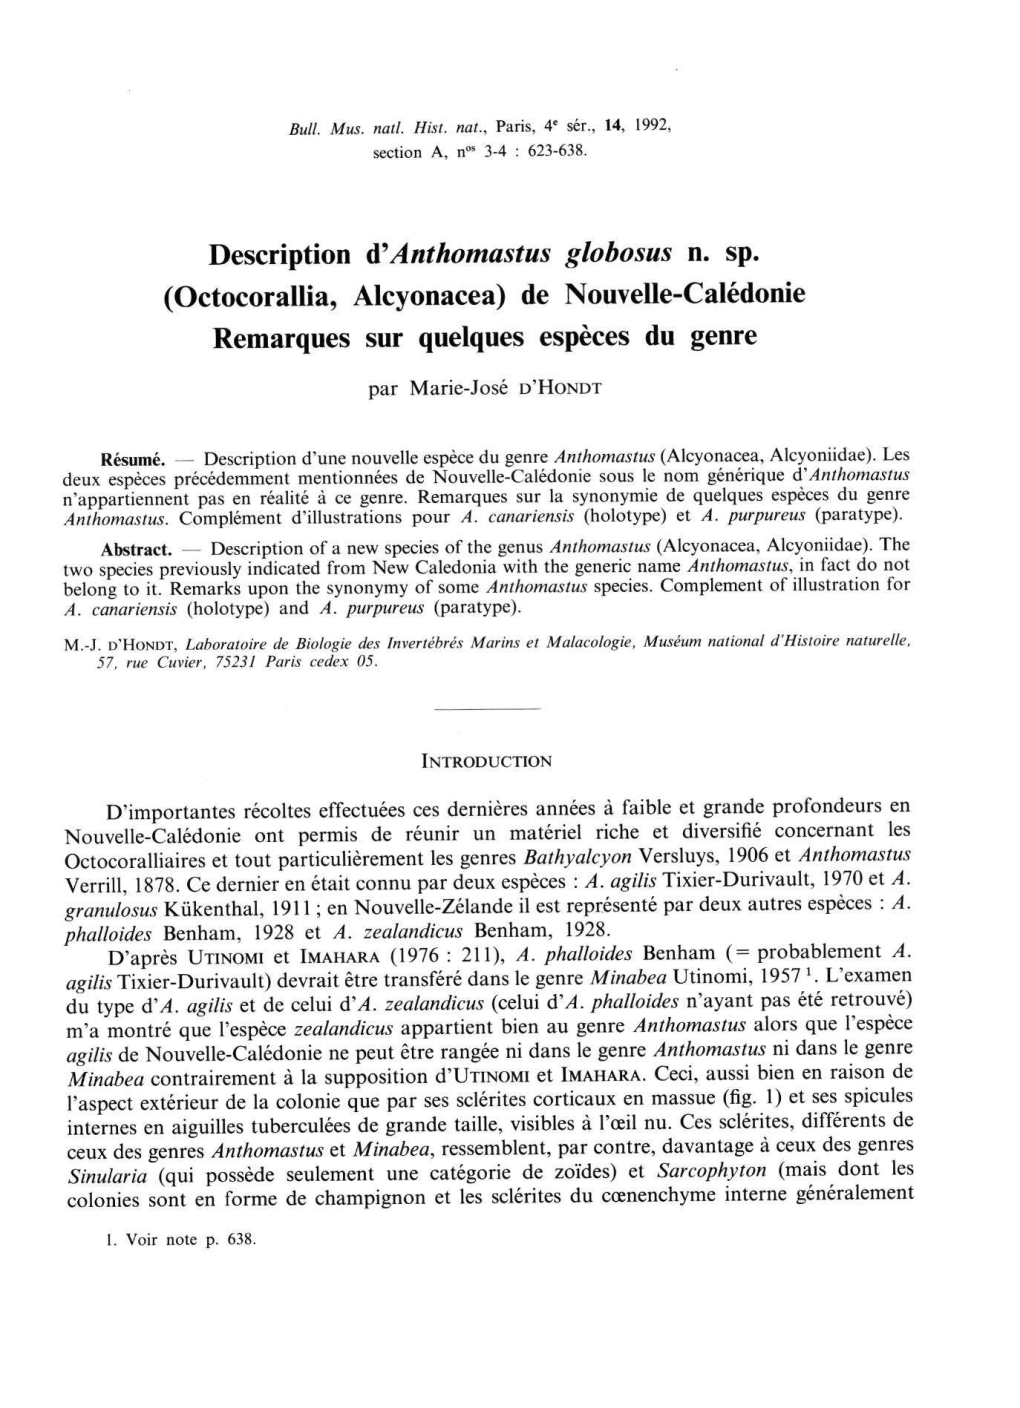 Description Anthomastus Globosus N. Sp. (Octocorallia, Alcyonacea) De Nouvelle-Calédonie Remarques Sur Quelques Espèces Du Genre